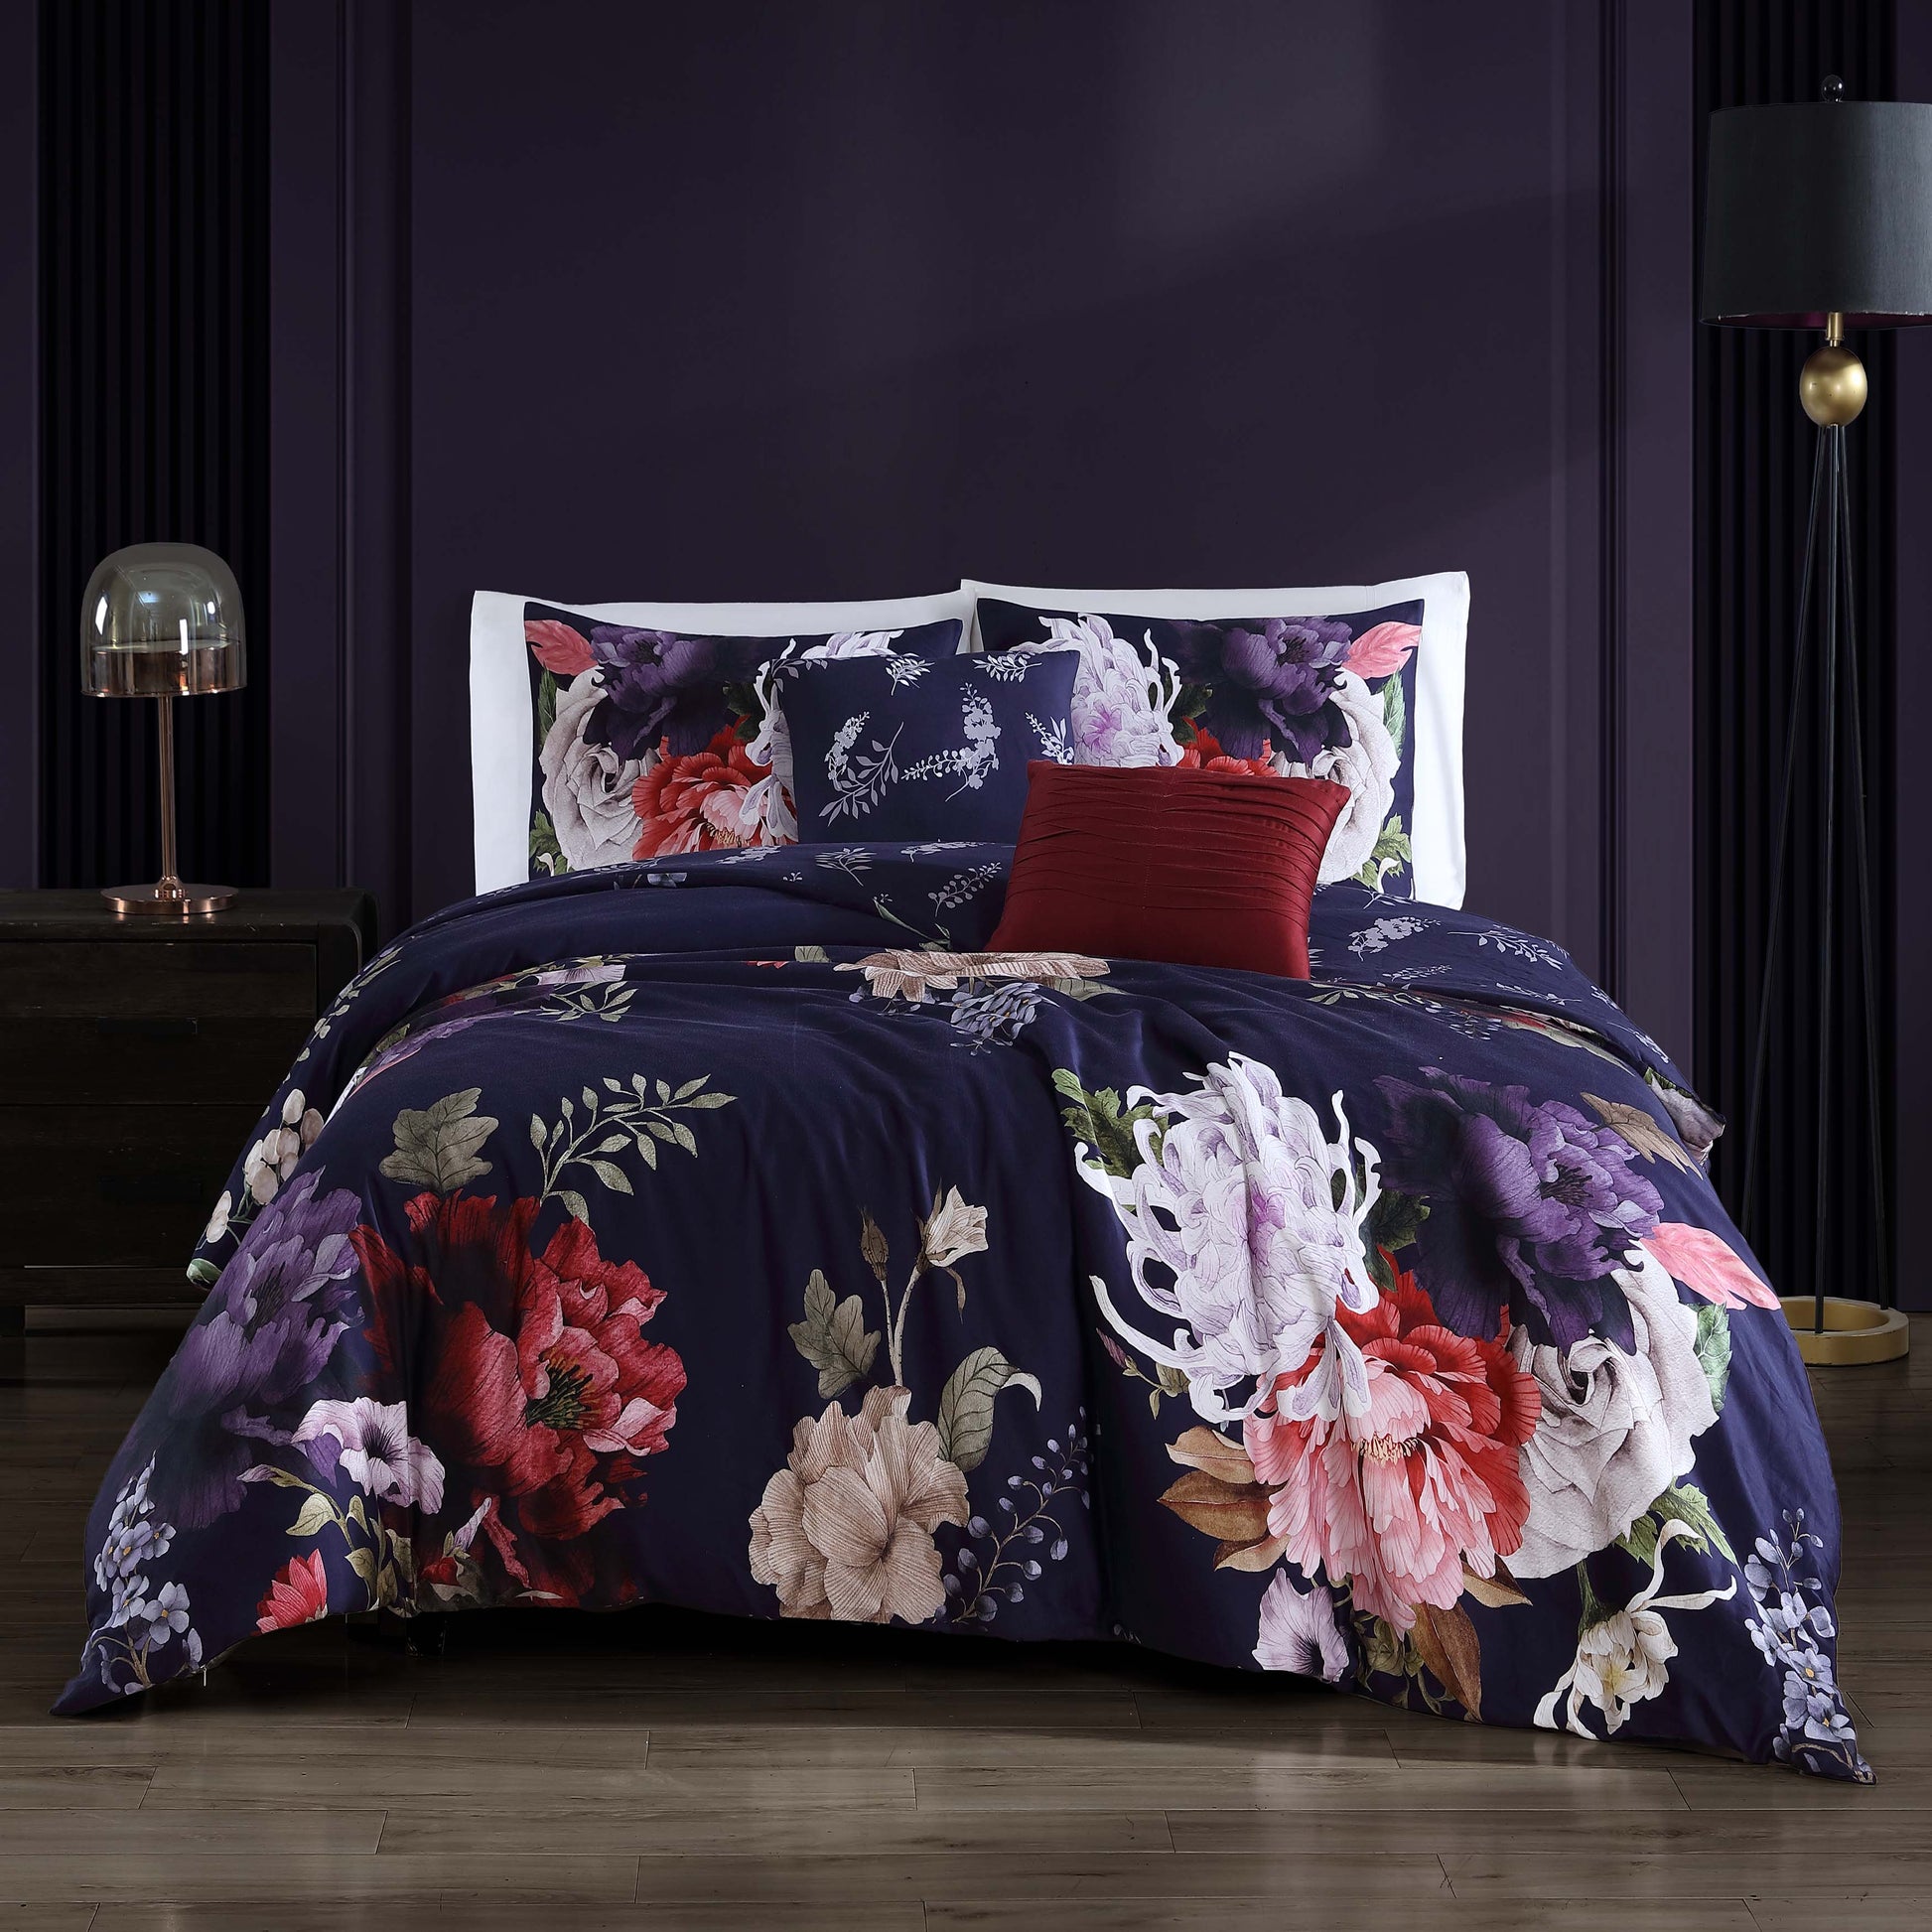 Bebejan Deep Purple Garden 100% Cotton 5-Piece Reversible Comforter Set Comforter Sets By Bebejan®